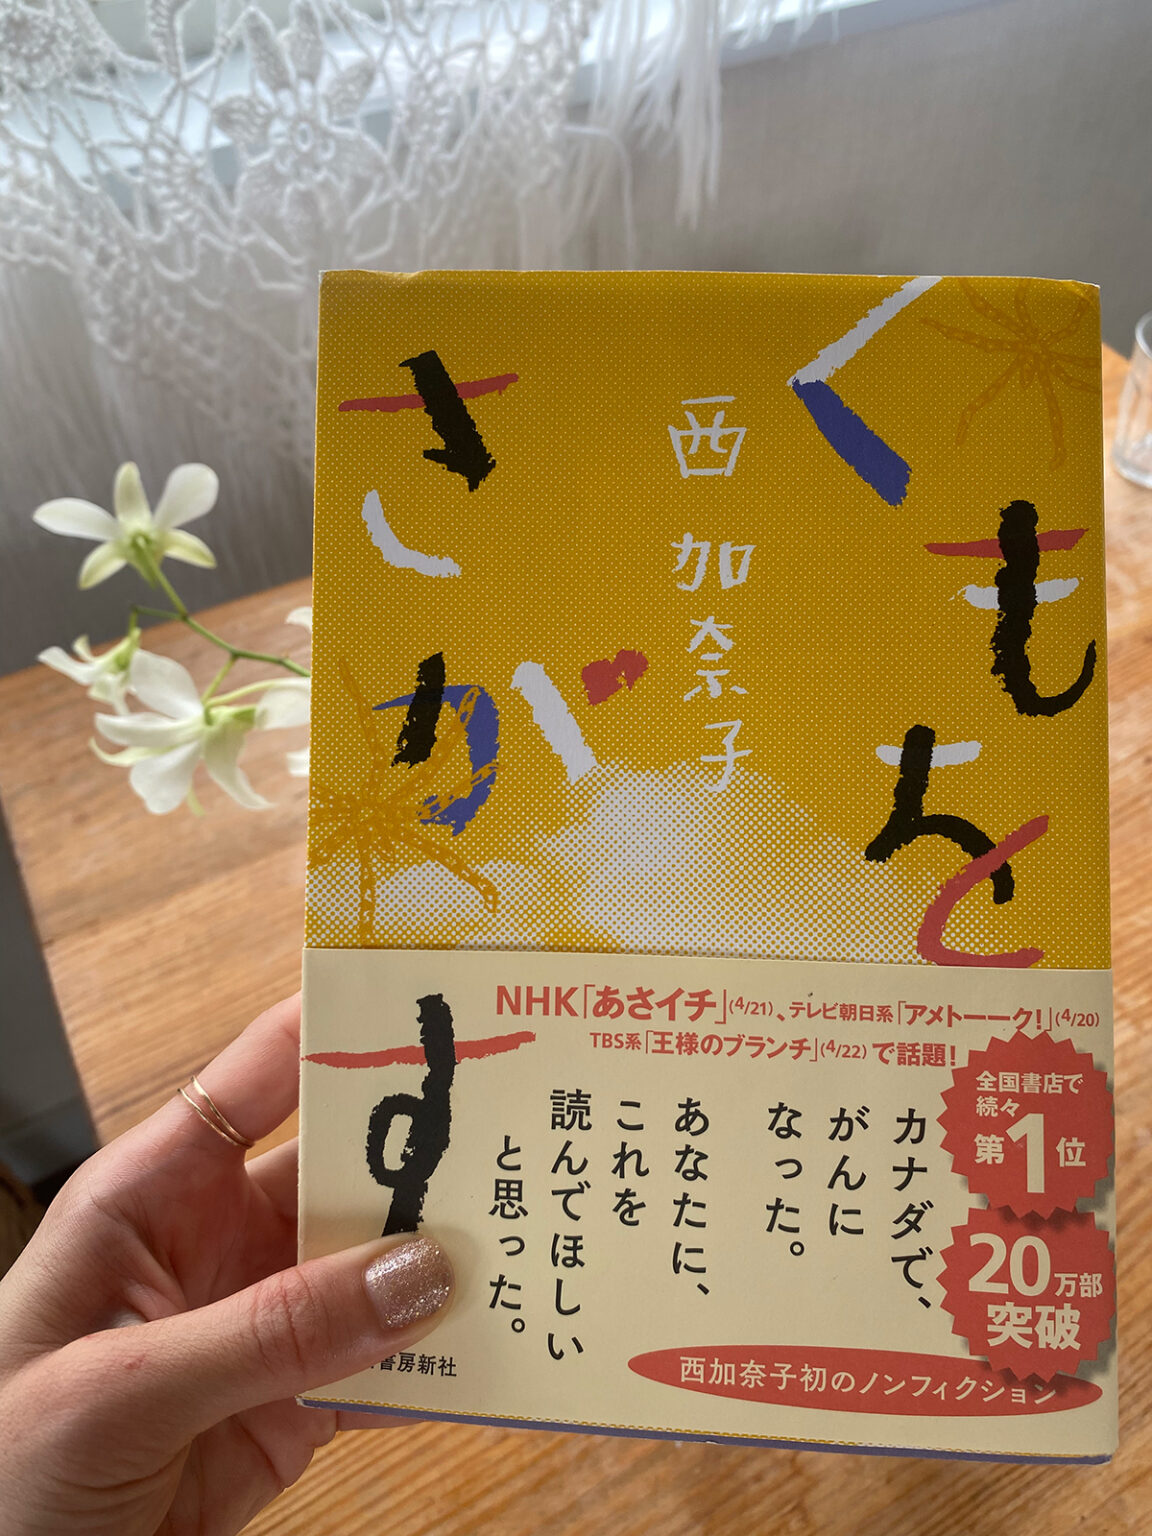 最近読んだ、西加奈子さんの『くもをさがす』(河出書房新社)最高だった！美沙ちゃんとぜひ語り合いたい内容です